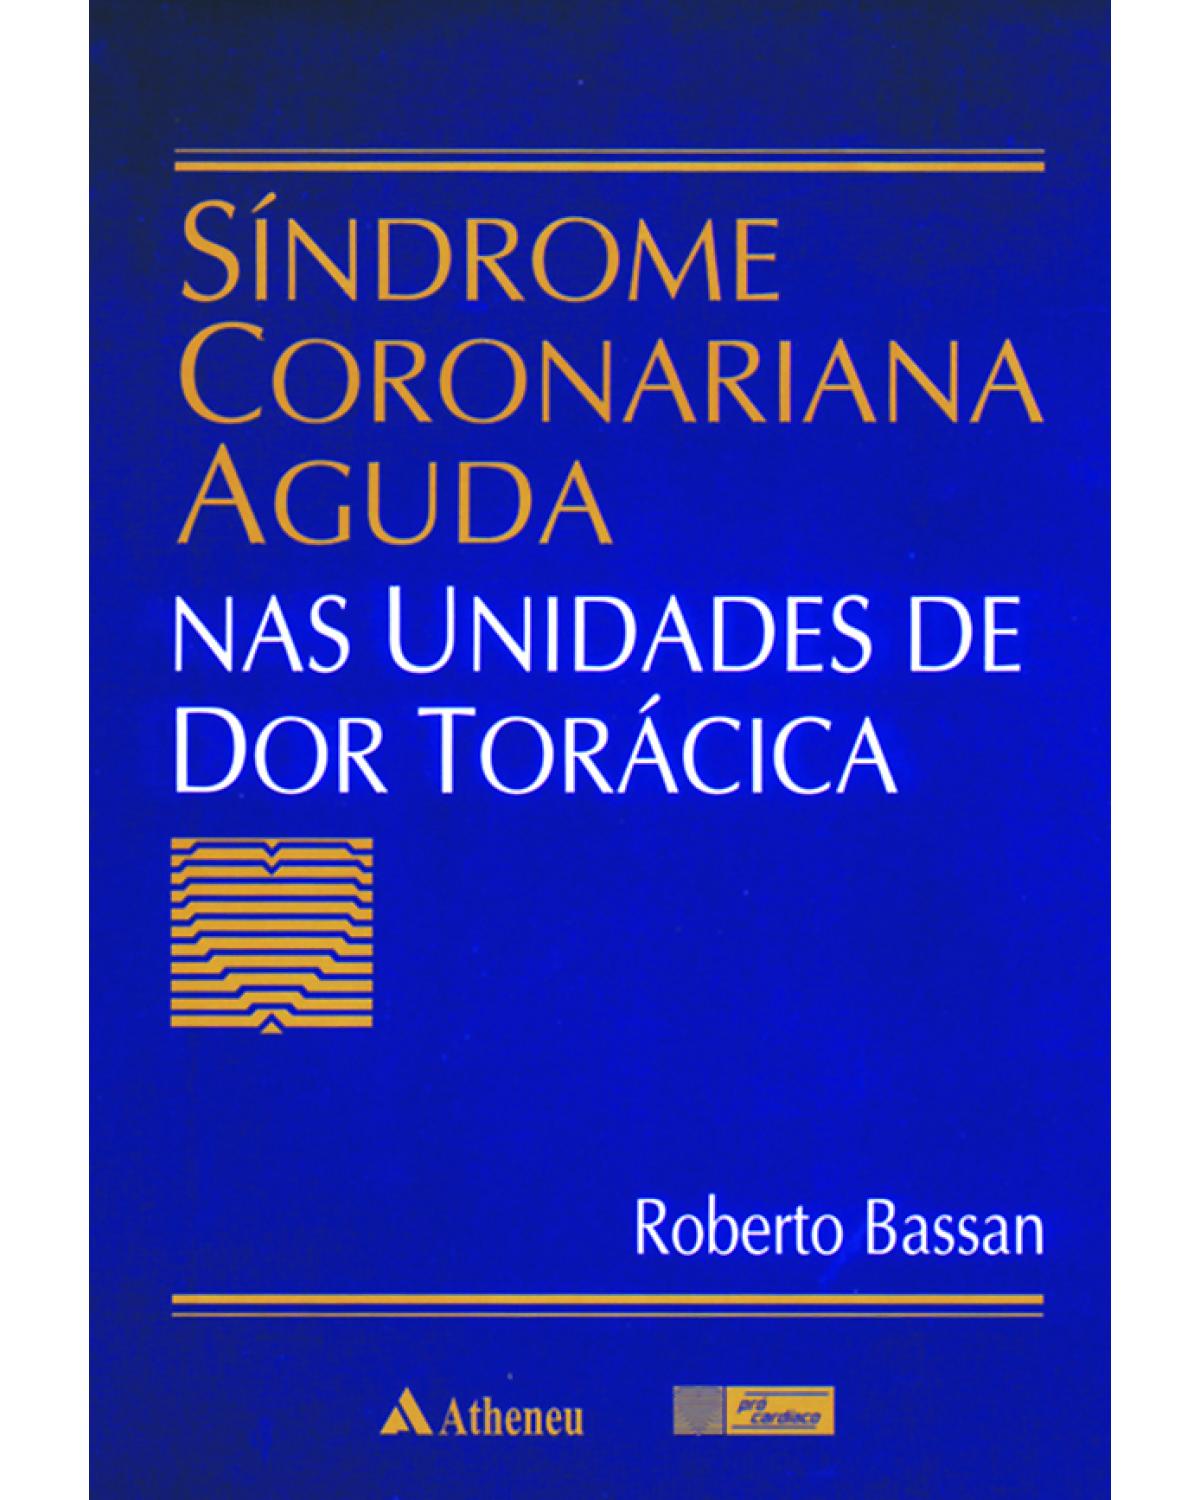 Síndrome coronariana aguda nas unidades de dor torácica - 1ª Edição | 2001